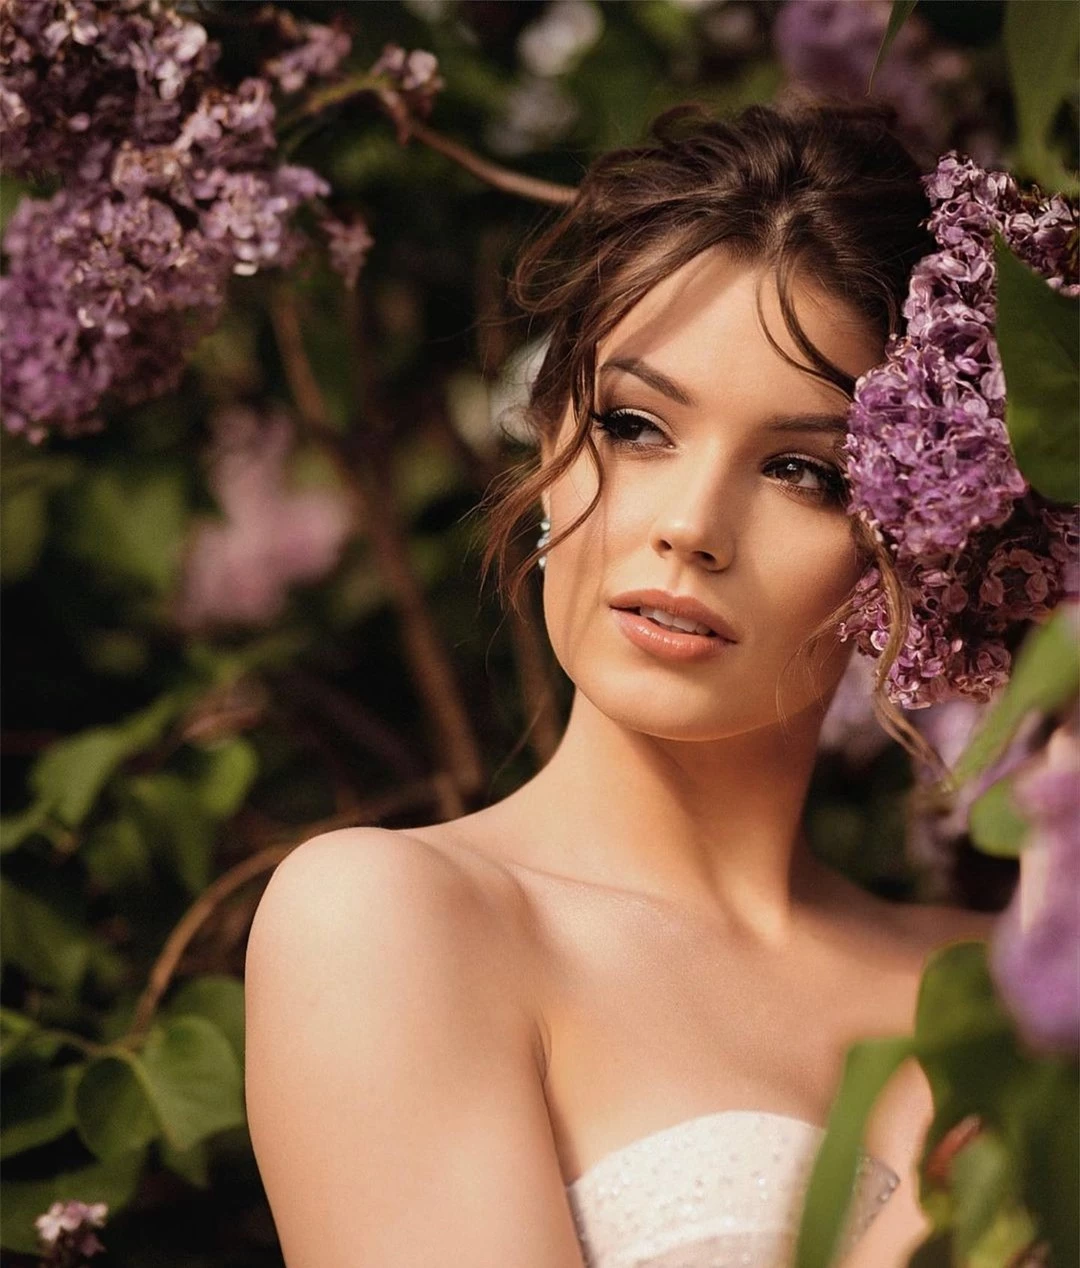 Nhan sắc người đẹp vượt qua 85.000 thí sinh đăng quang Hoa hậu Nga ảnh 2